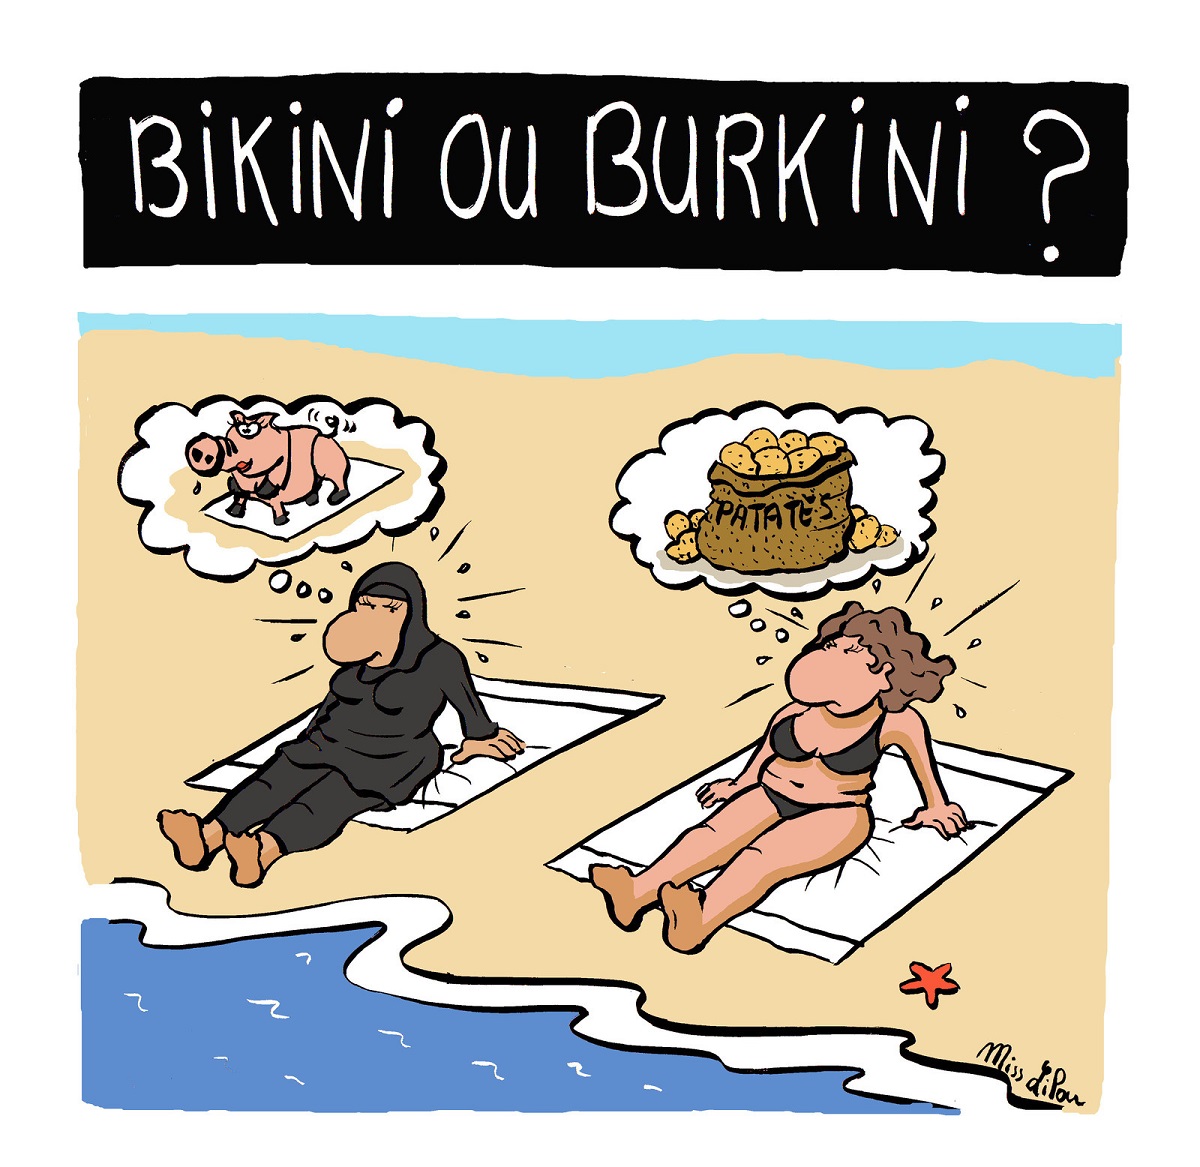 Dessin d'une femme en bikini et d'une femme en burkini sur une plage